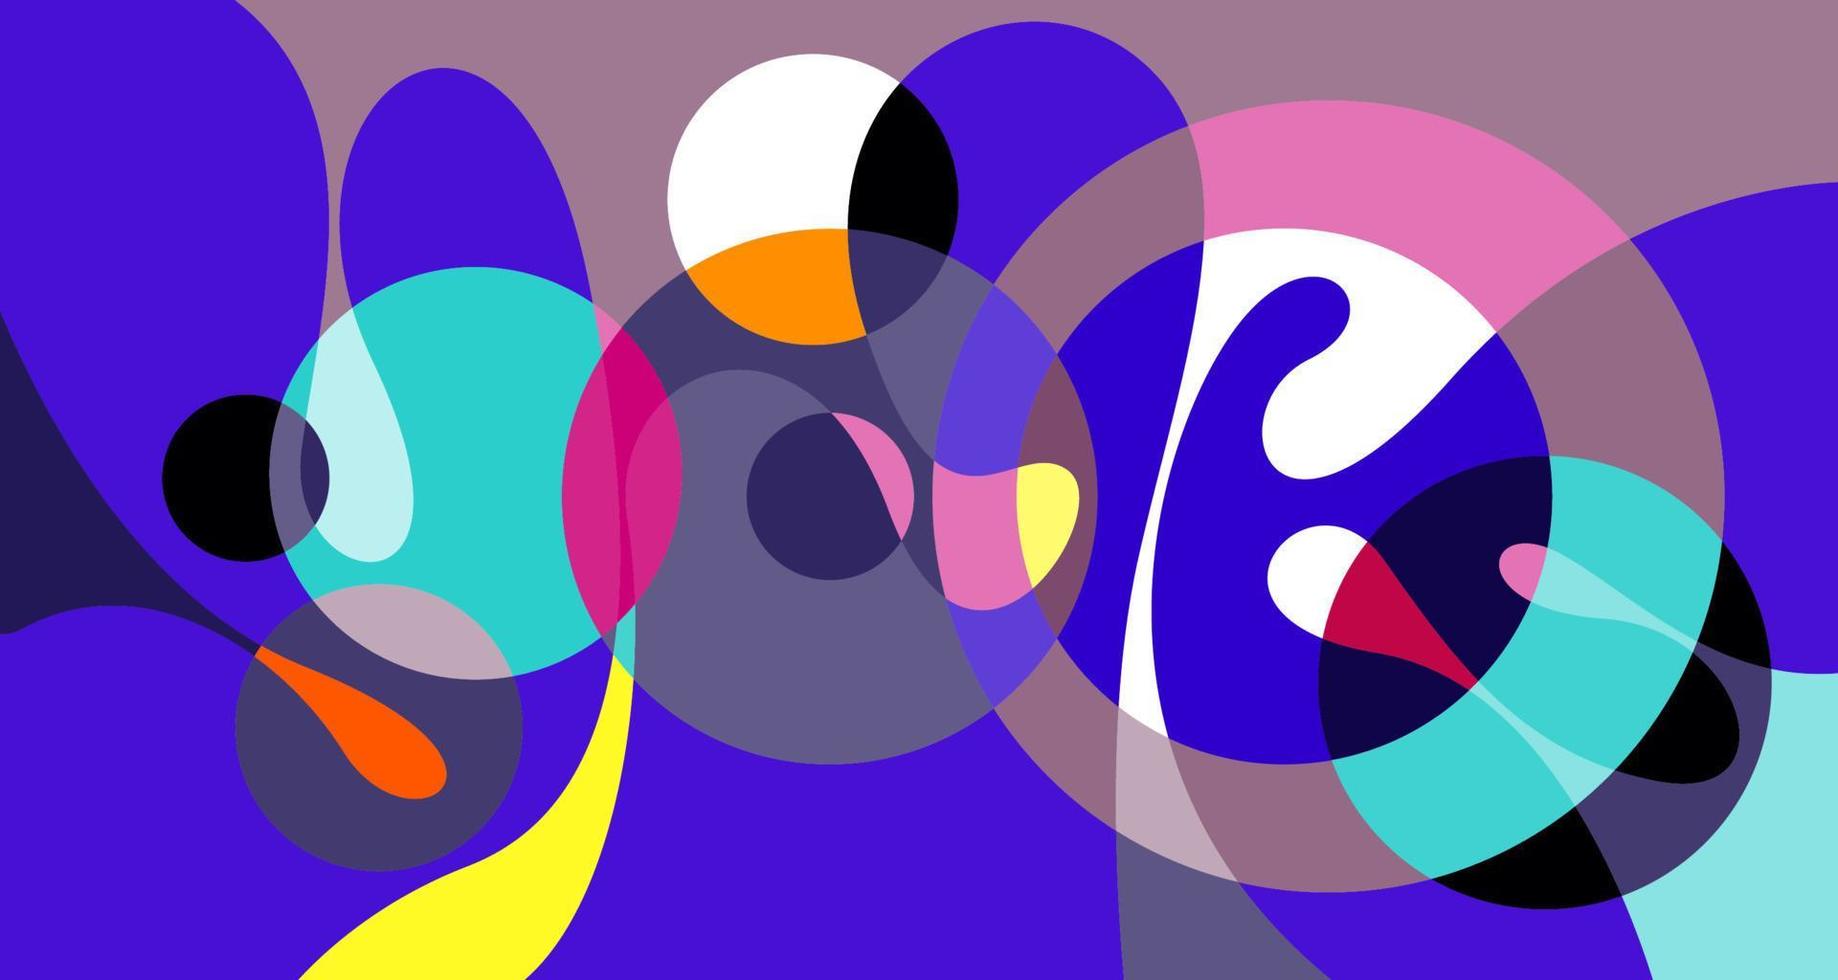 Vektor bunte abstrakte psychedelische Flüssigkeit und flüssige Hintergrundmuster